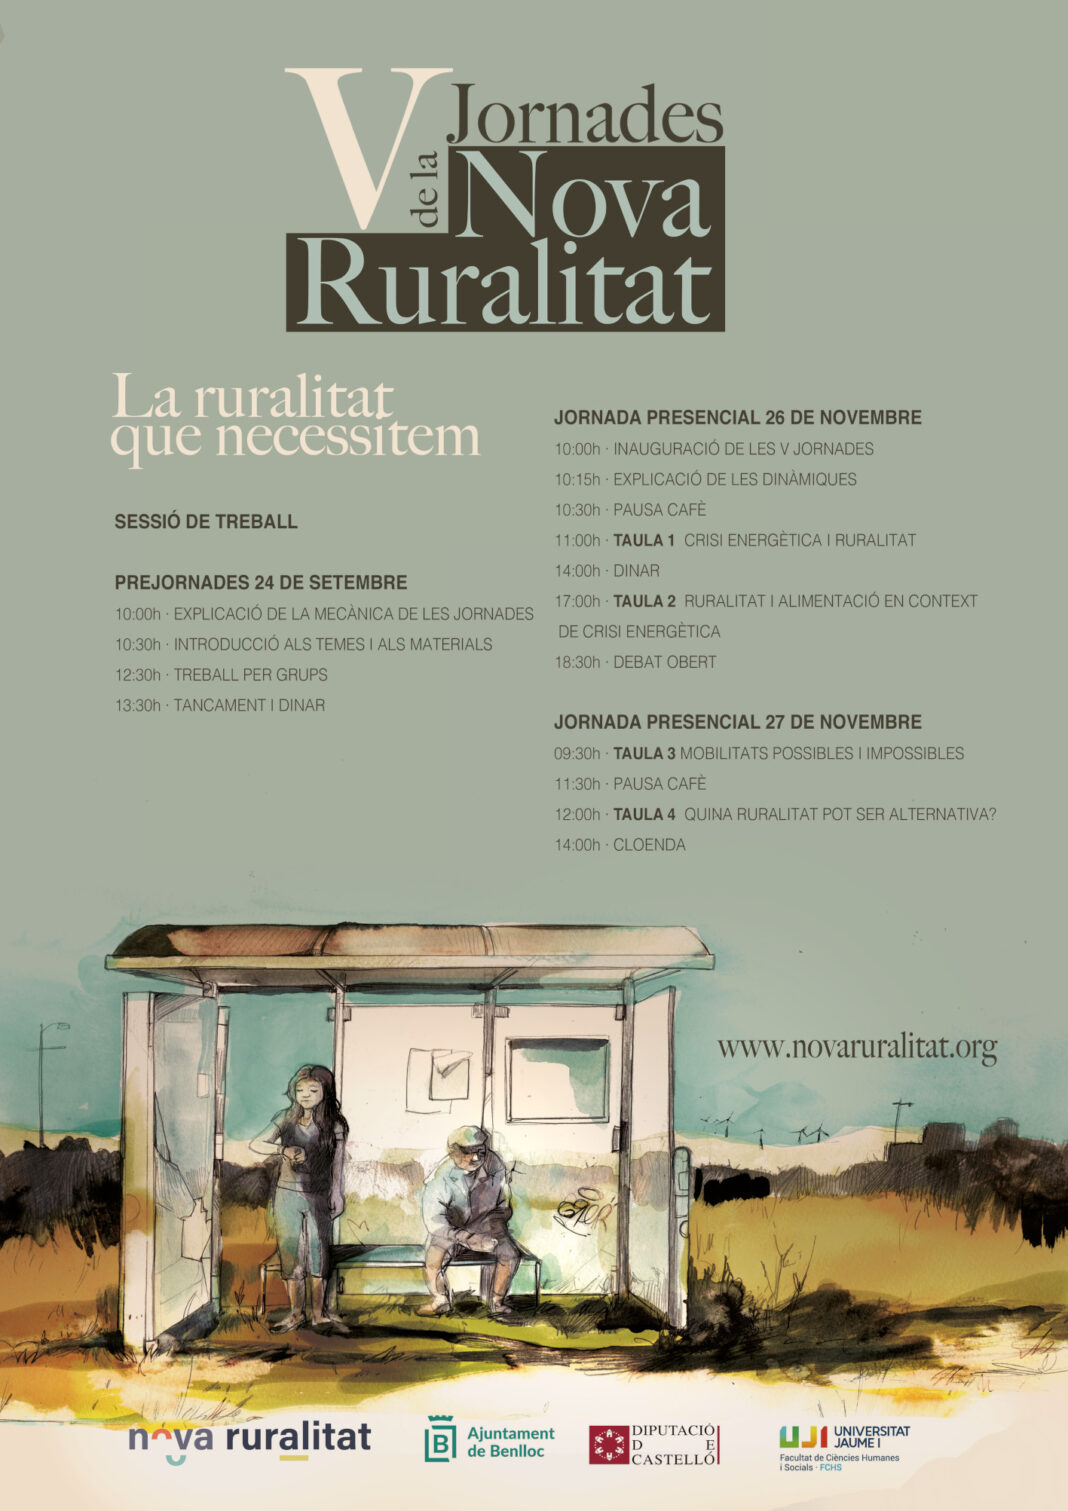 La quinta edición de las Jornadas de la Nueva Ruralidad debatirá sobre la oportunidad que tiene el medio rural de salir reforzado ante la crisis energética